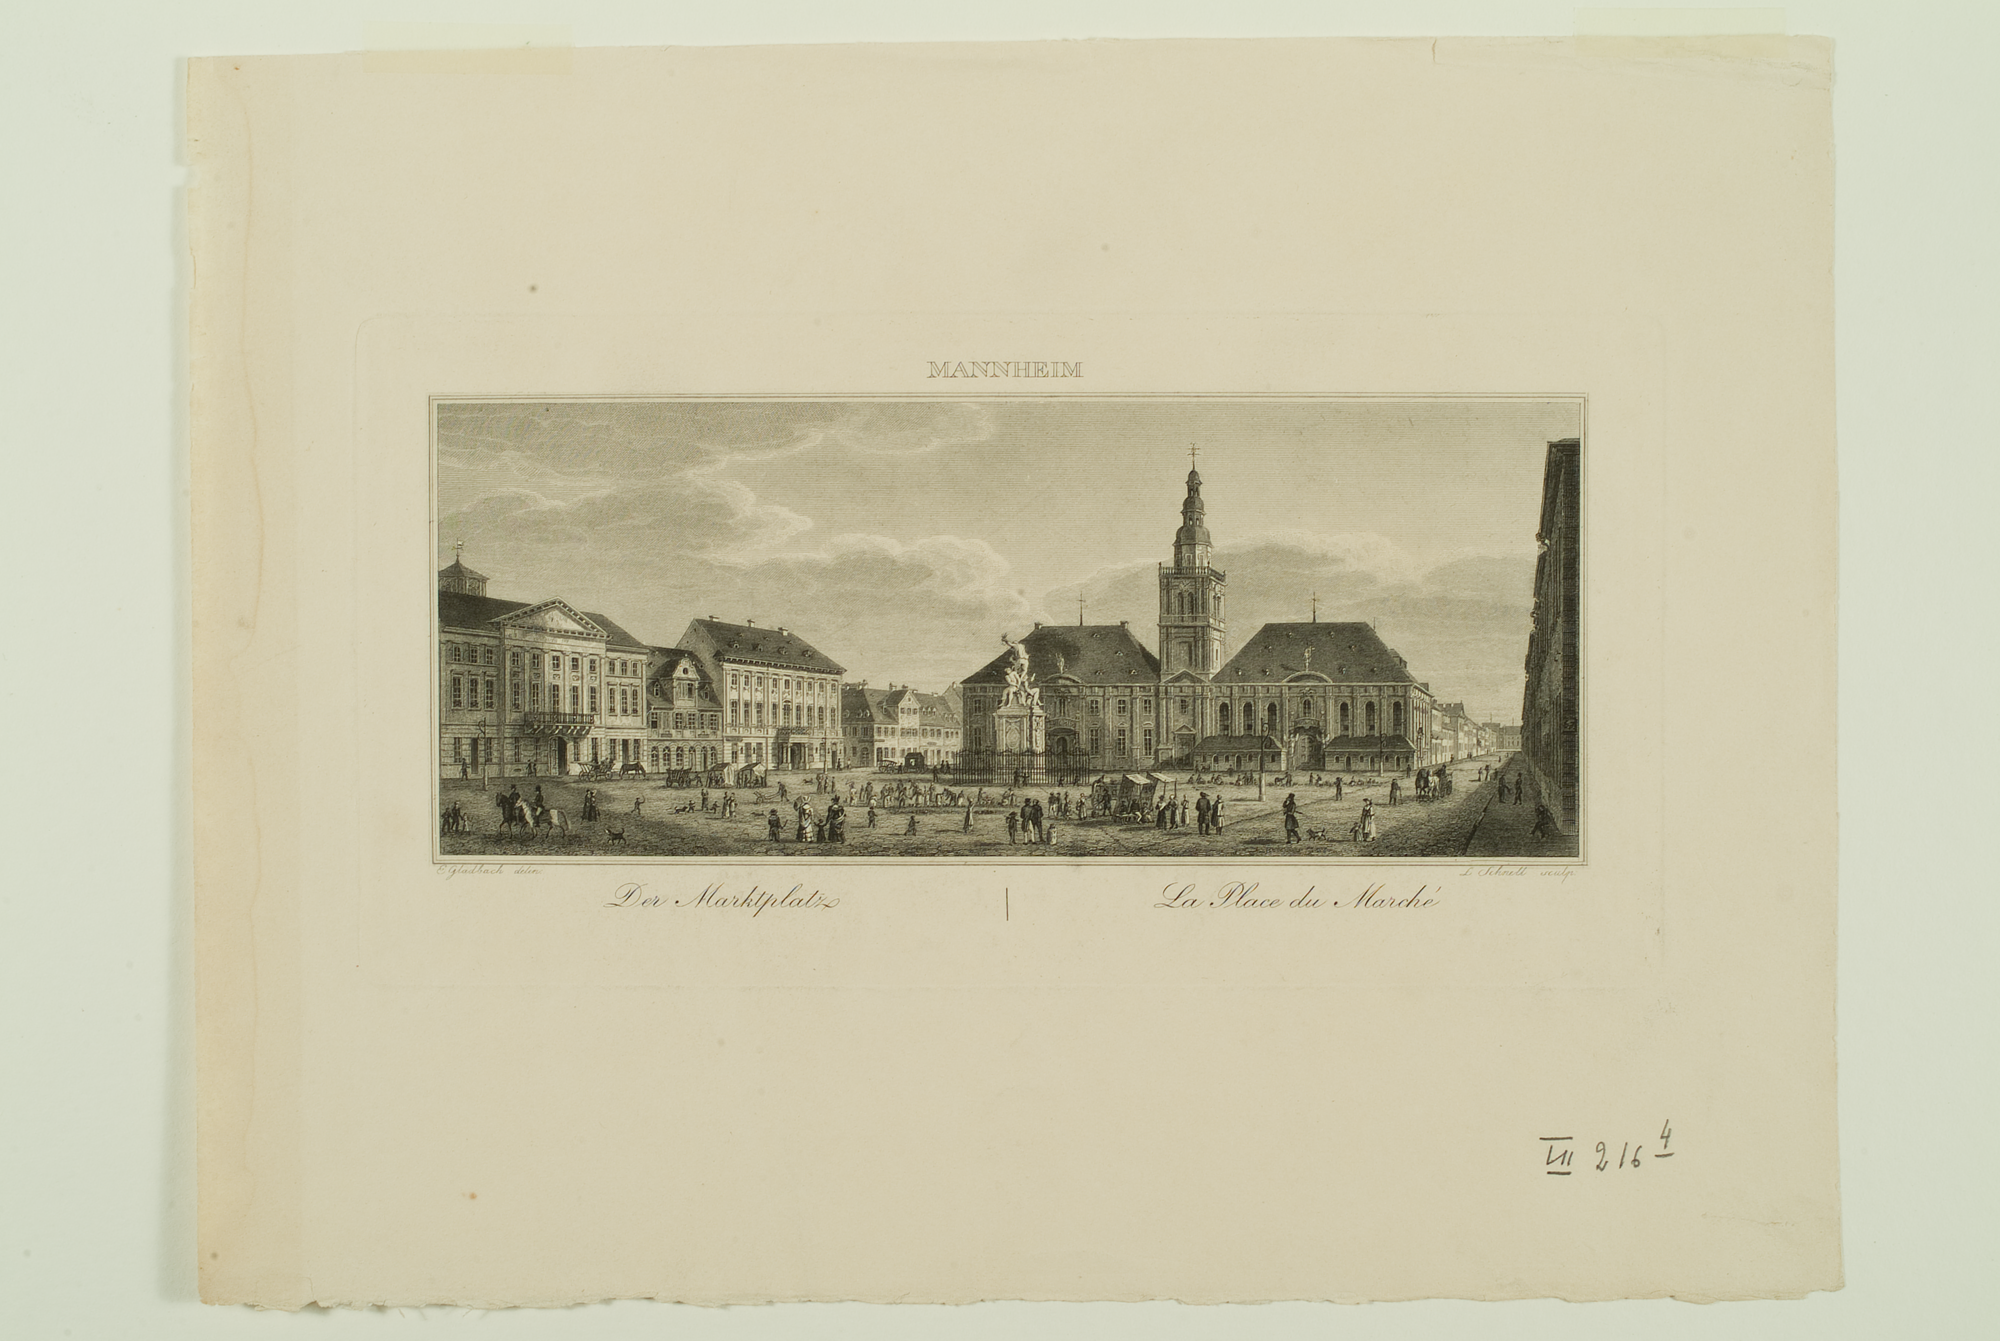 Marktplatz (Quelle: Bildindex der Kunst und Architektur)